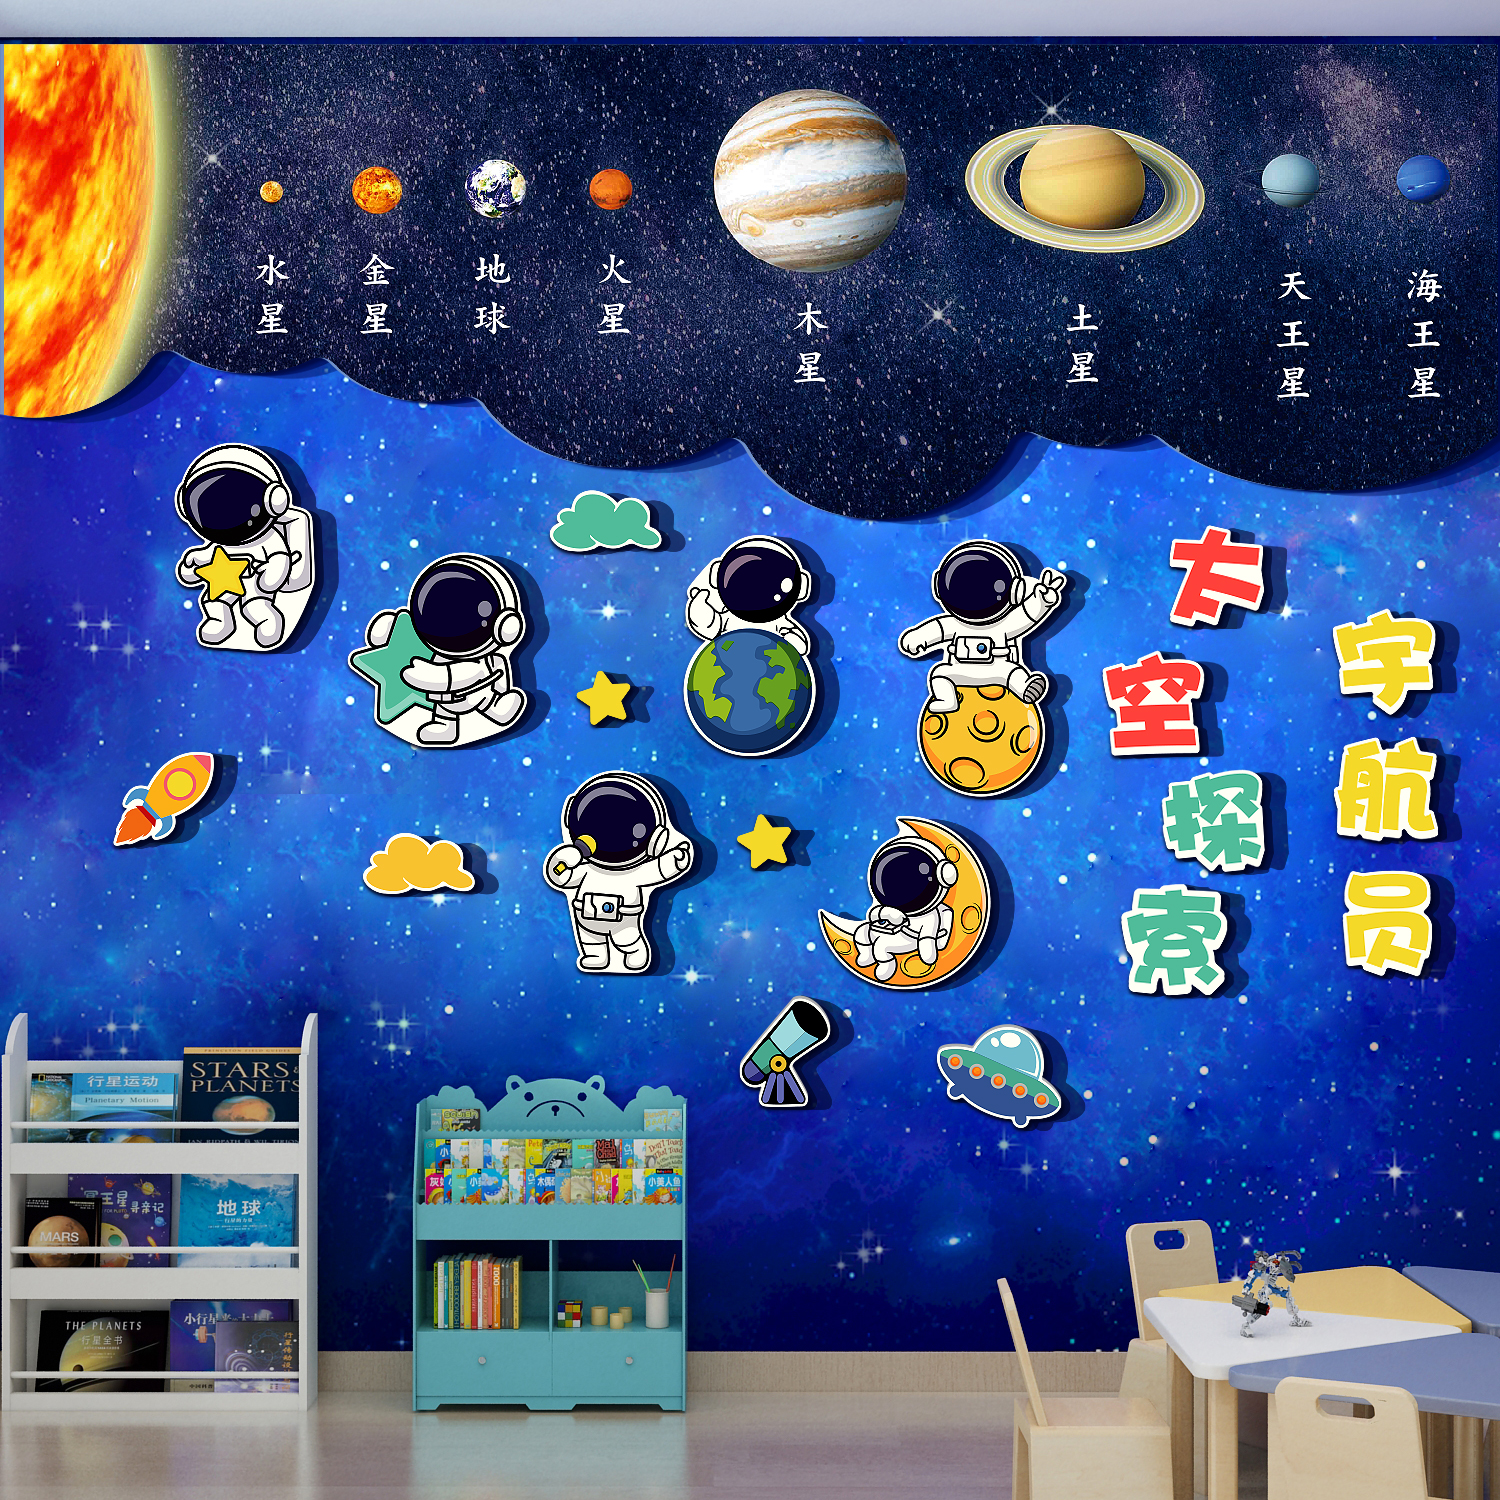 宇宙航员太空星球主题科学感区幼儿园墙面装饰文化绘本馆环创成品